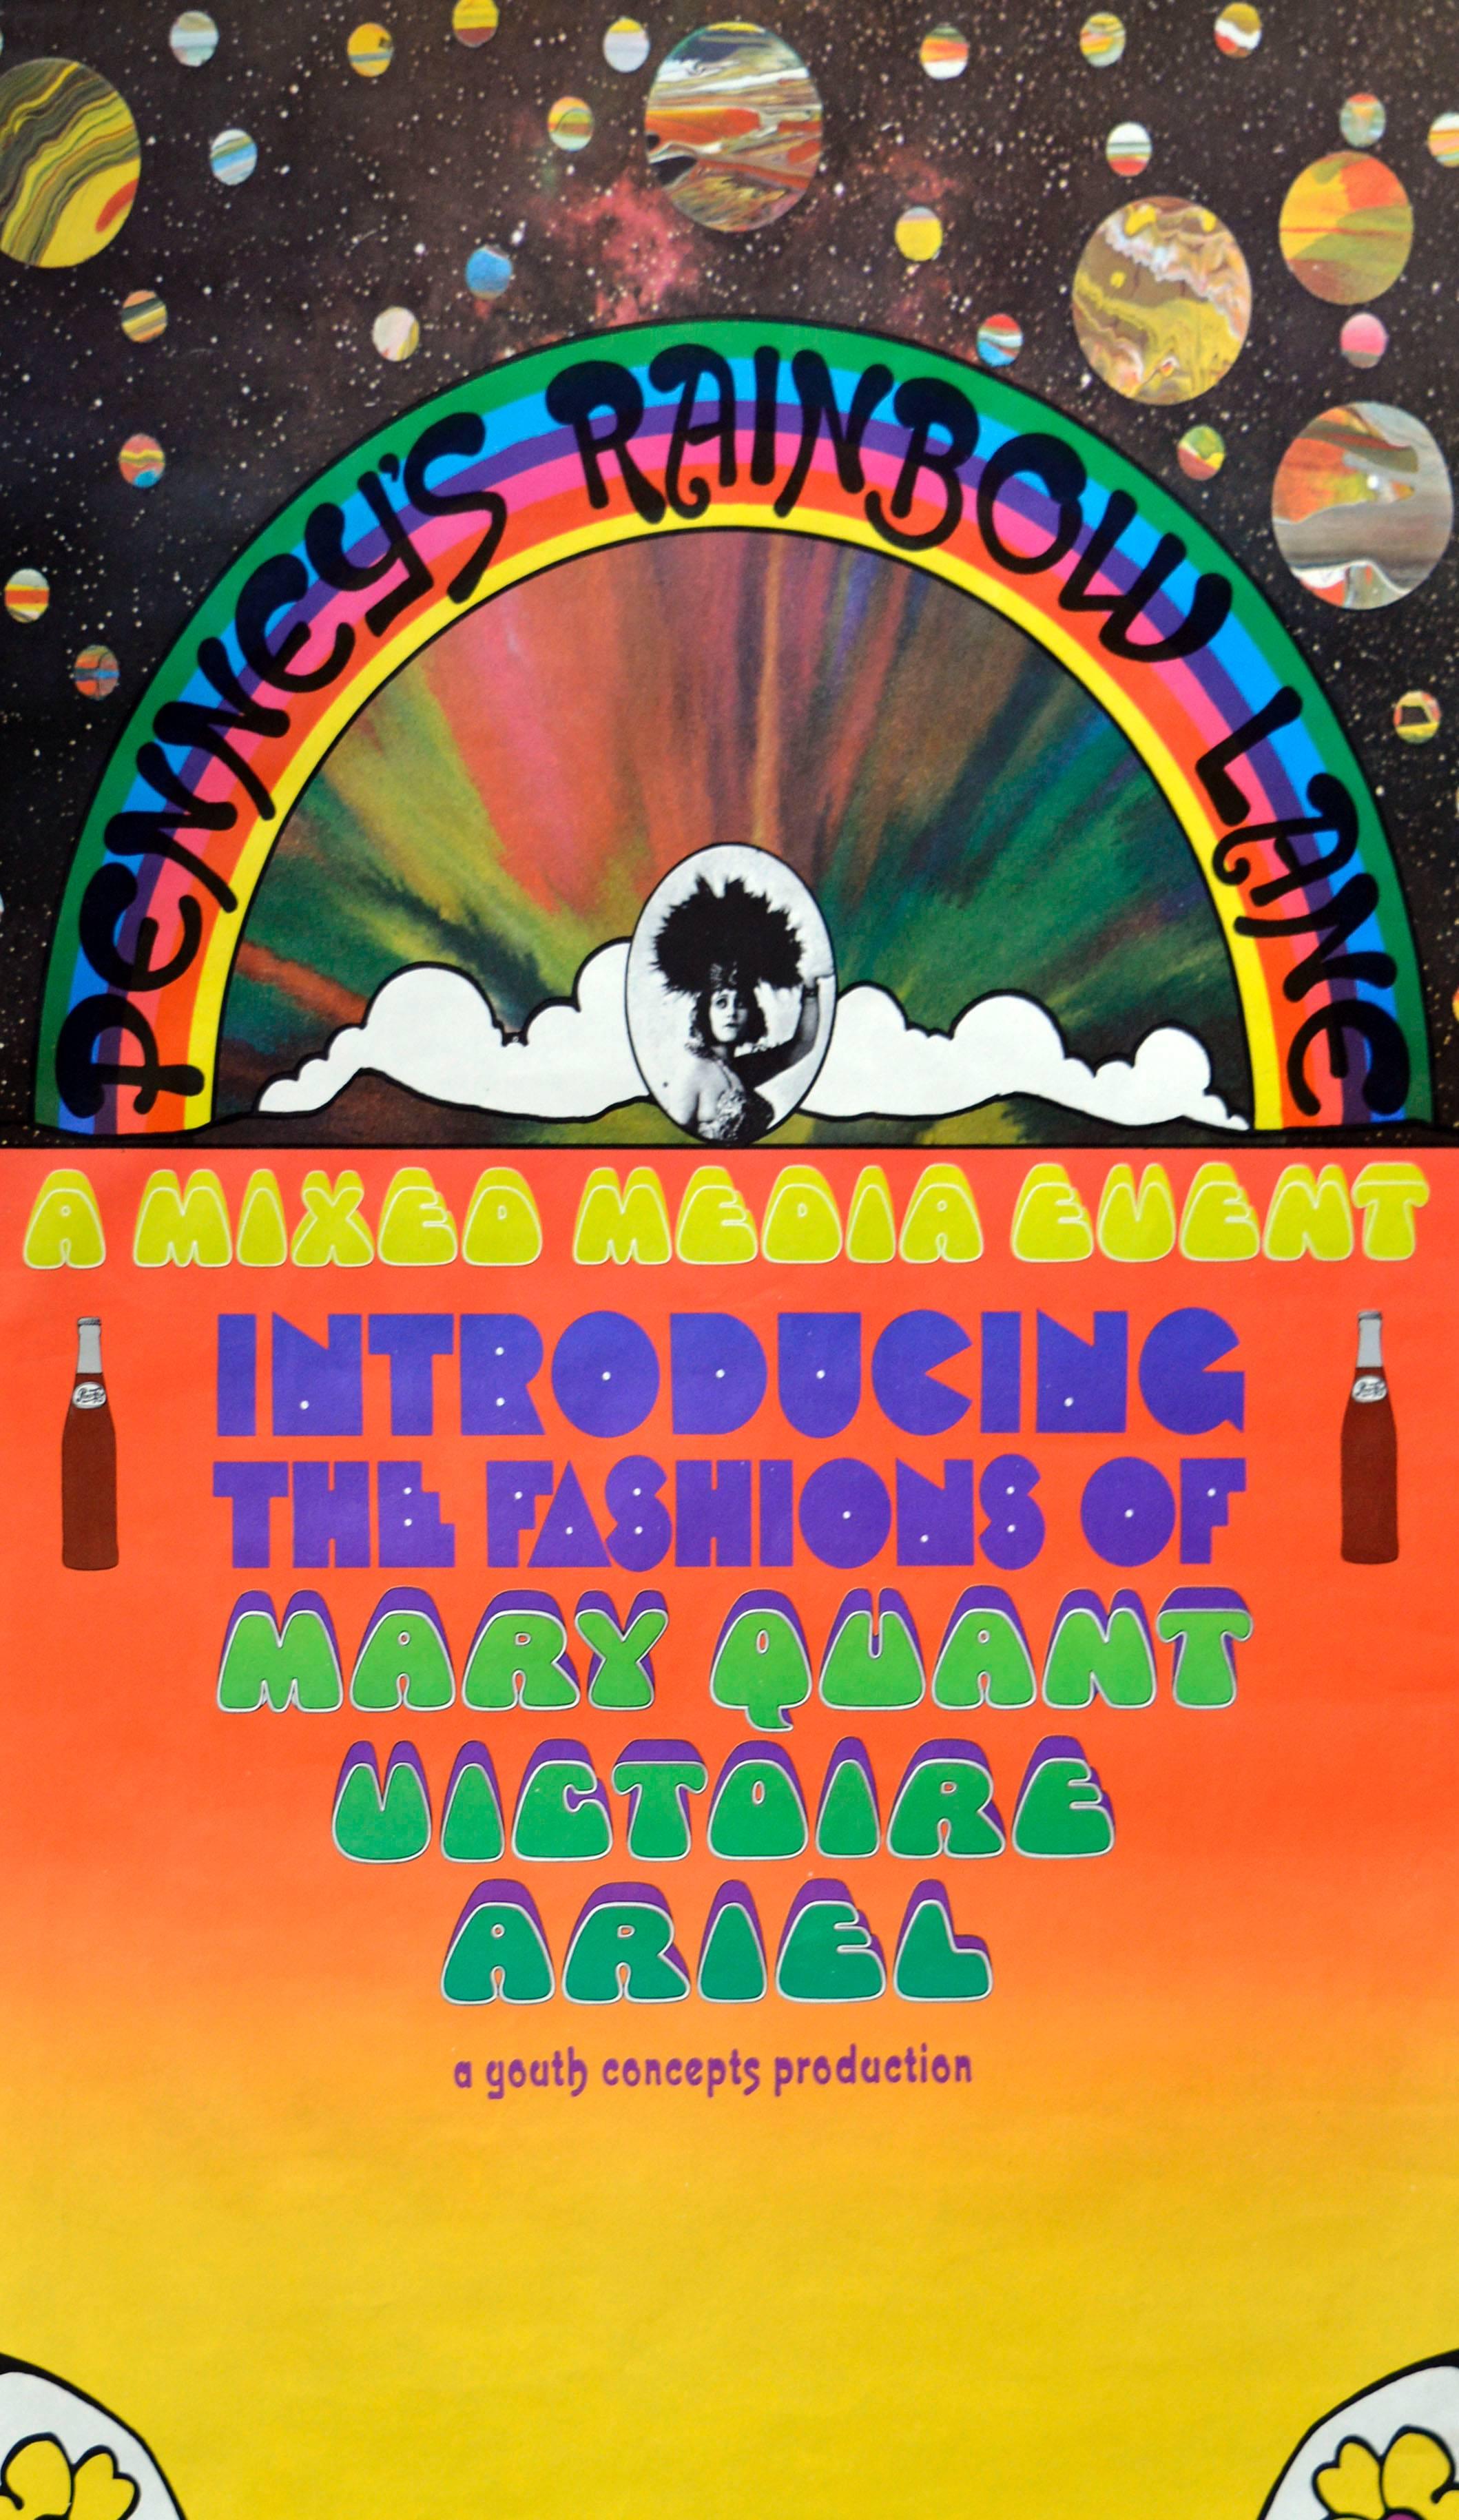 Penny's Rainbow Lane - Affiche pop art psychédélique abstraite vintage des années 1960  - Print de Peter Max